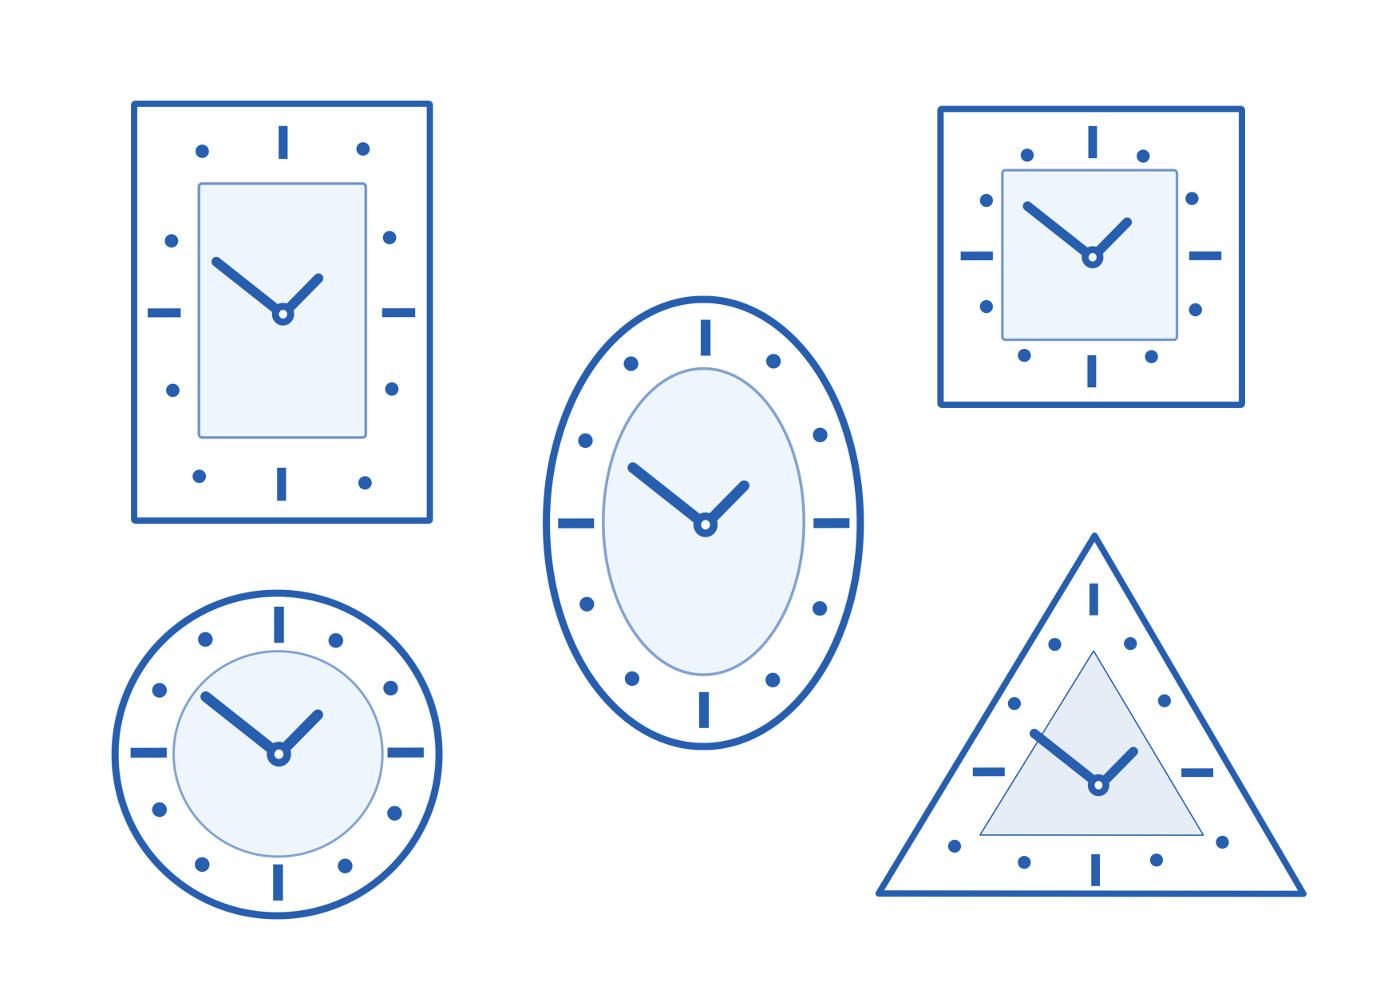 Занятие часы подготовительная группа. Изображение часов разной формы. Циферблат со стрелками. Часы рисовать. Форма циферблата часов.